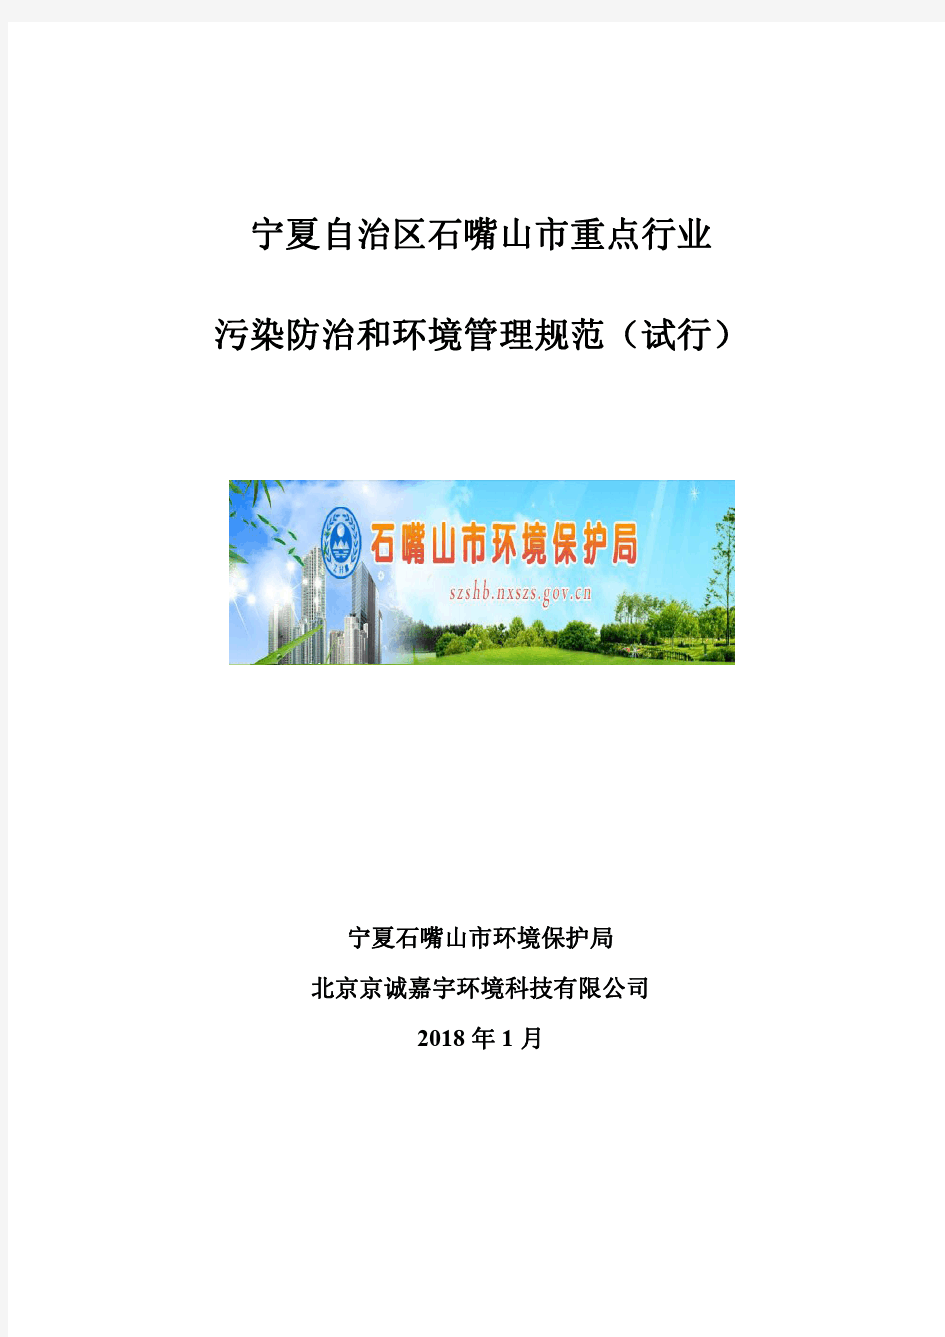 宁夏自治区石嘴山市重点行业污染防治和环境管理规范(试行)